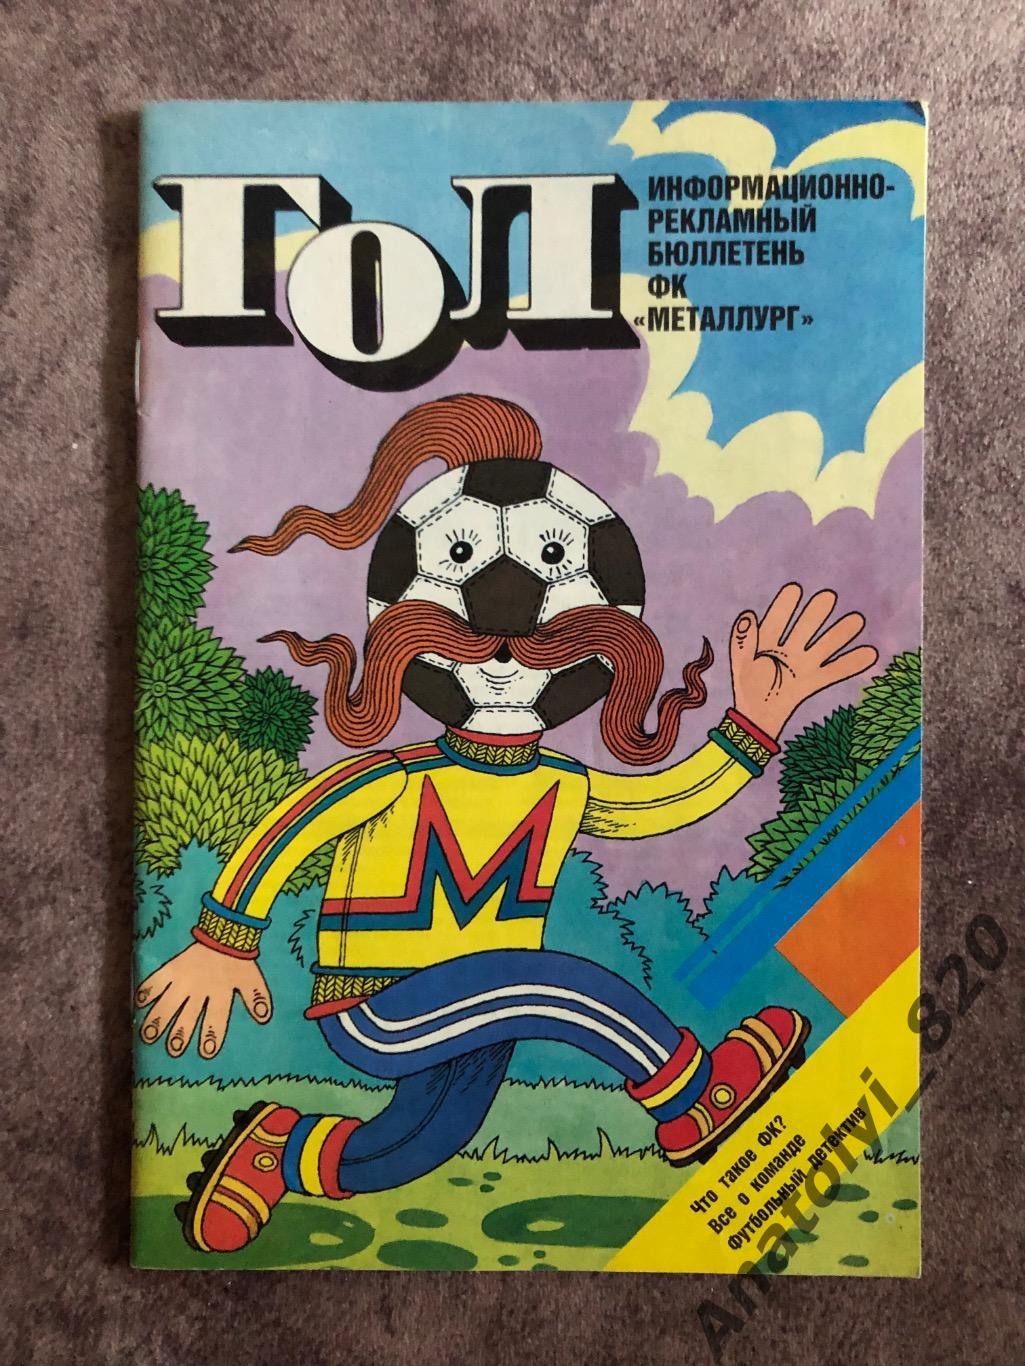 Информационно-Рекламный бюллетень ФК Металлург Запорожье 1989 год